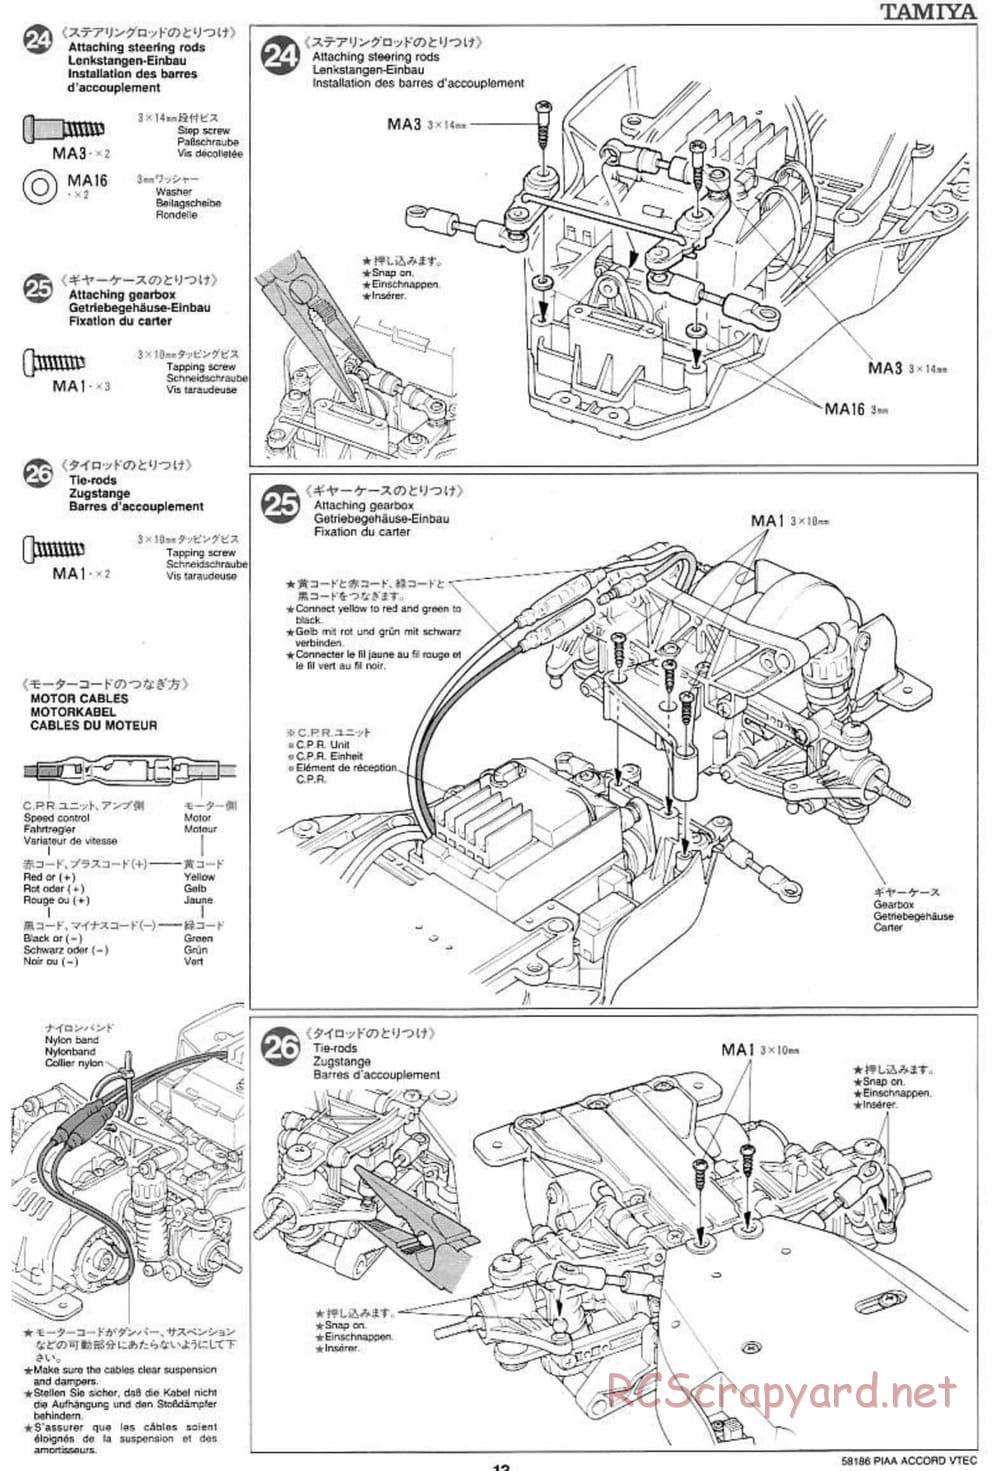 Tamiya - PIAA Accord VTEC - FF-01 Chassis - Manual - Page 13